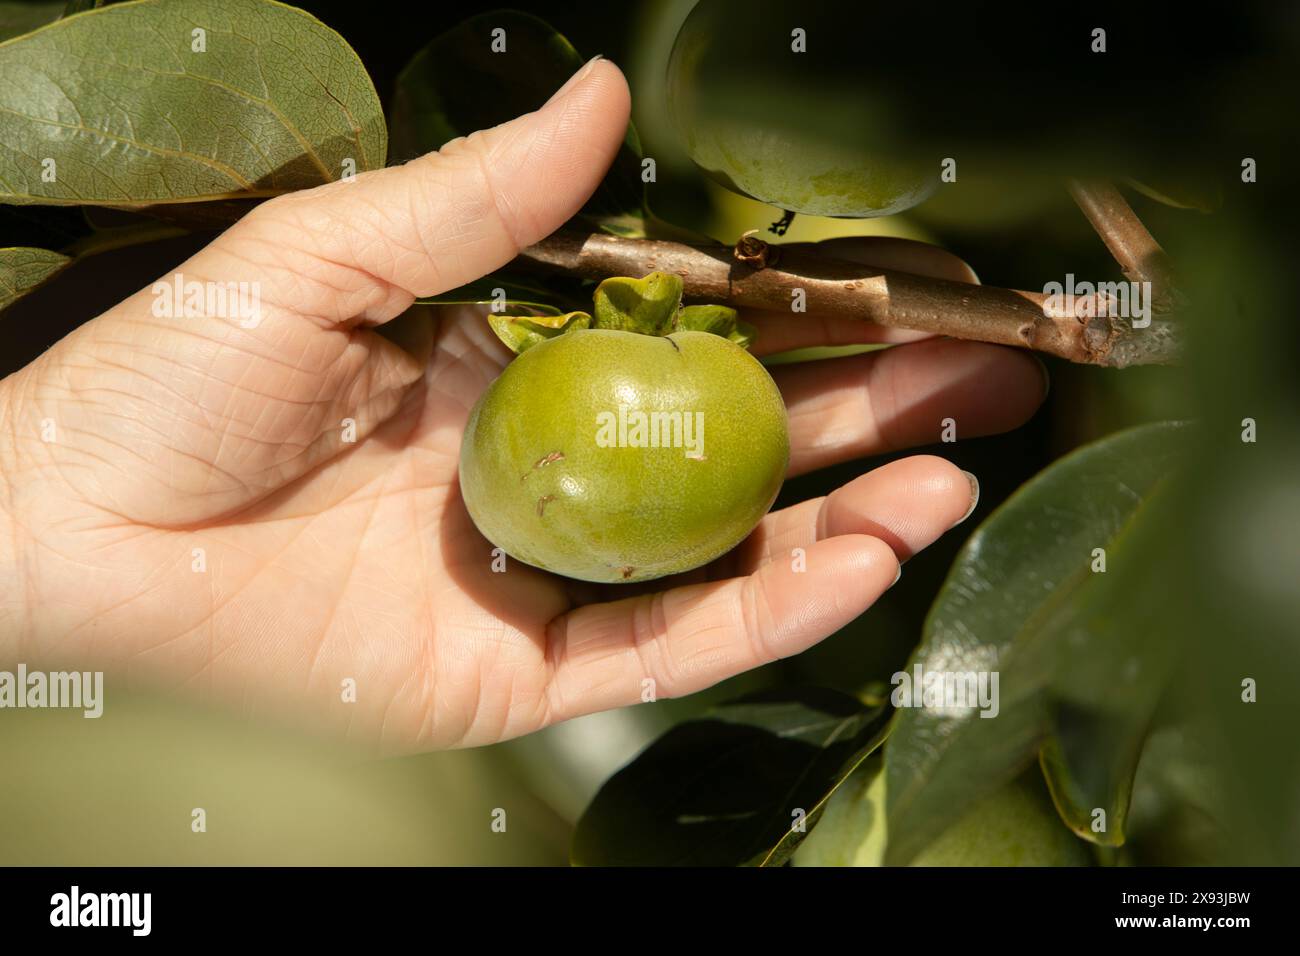 fruit, New Zealand Stock Photo